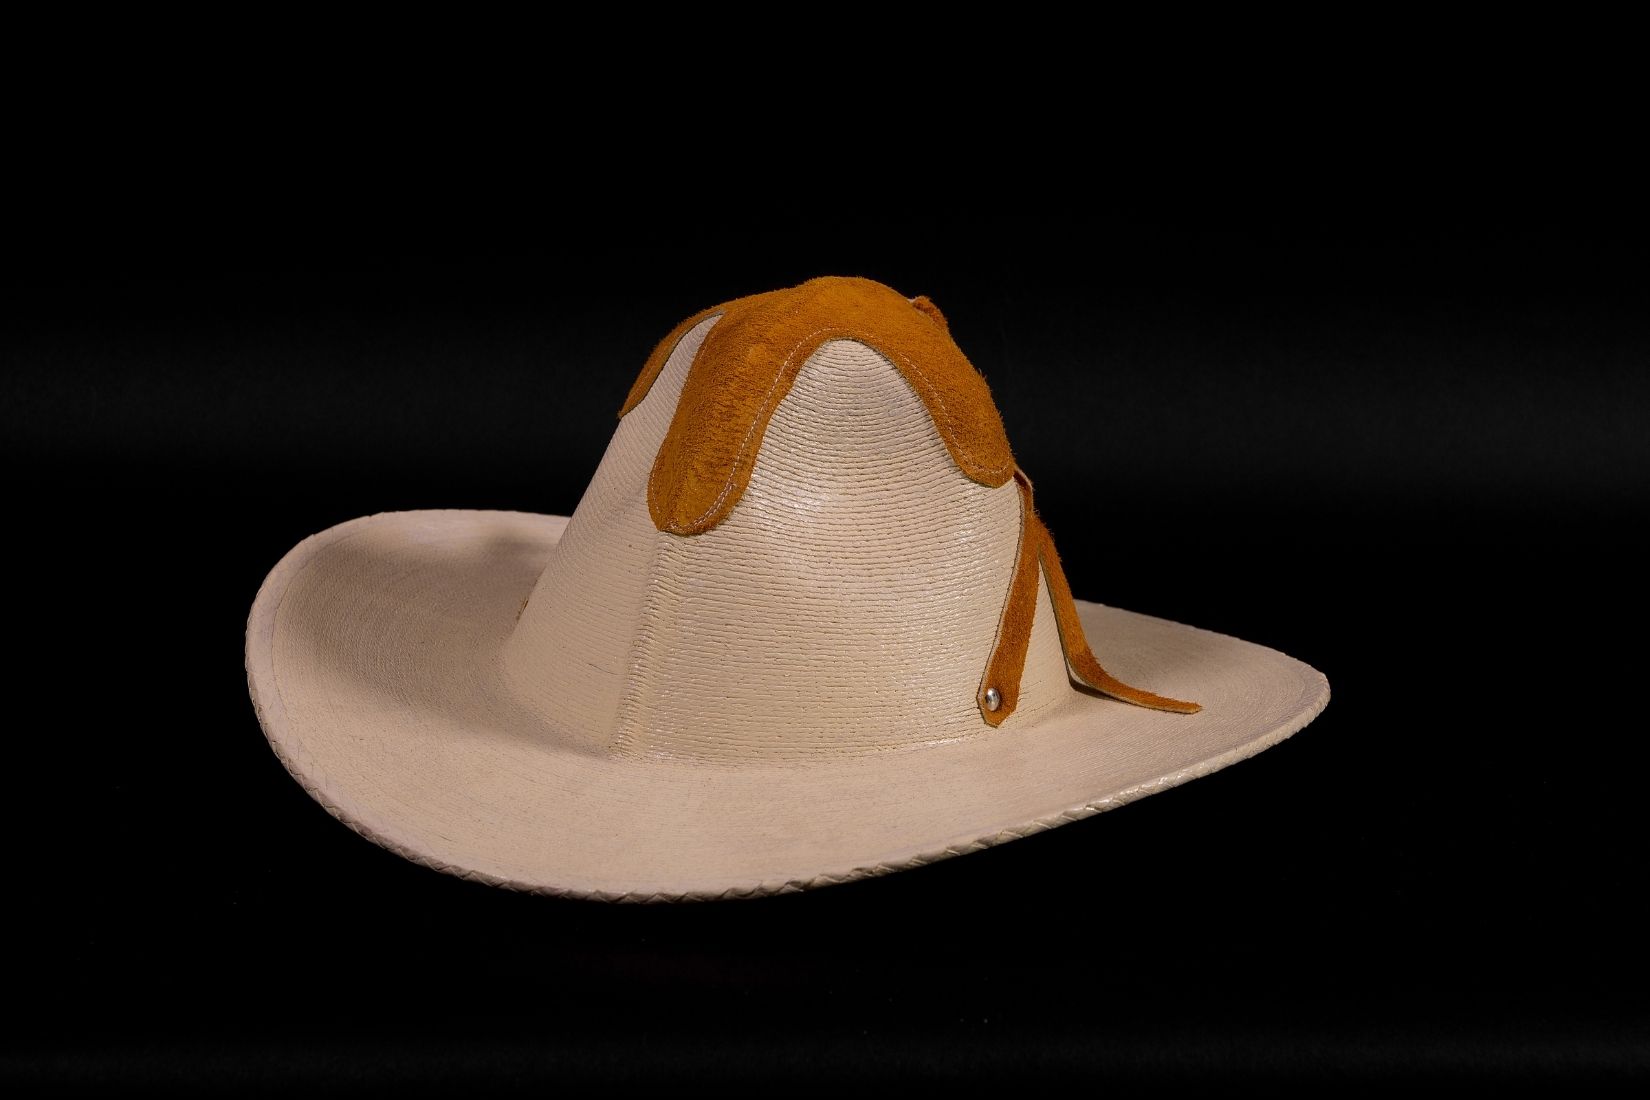 Sombrero colimote, tejido de palma "a cuatro pedradas", con piel. Artesano Juan José Aguilar R. Villa de Álvarez, Col.  2016. Col. MAP. (Foto: Jasso).